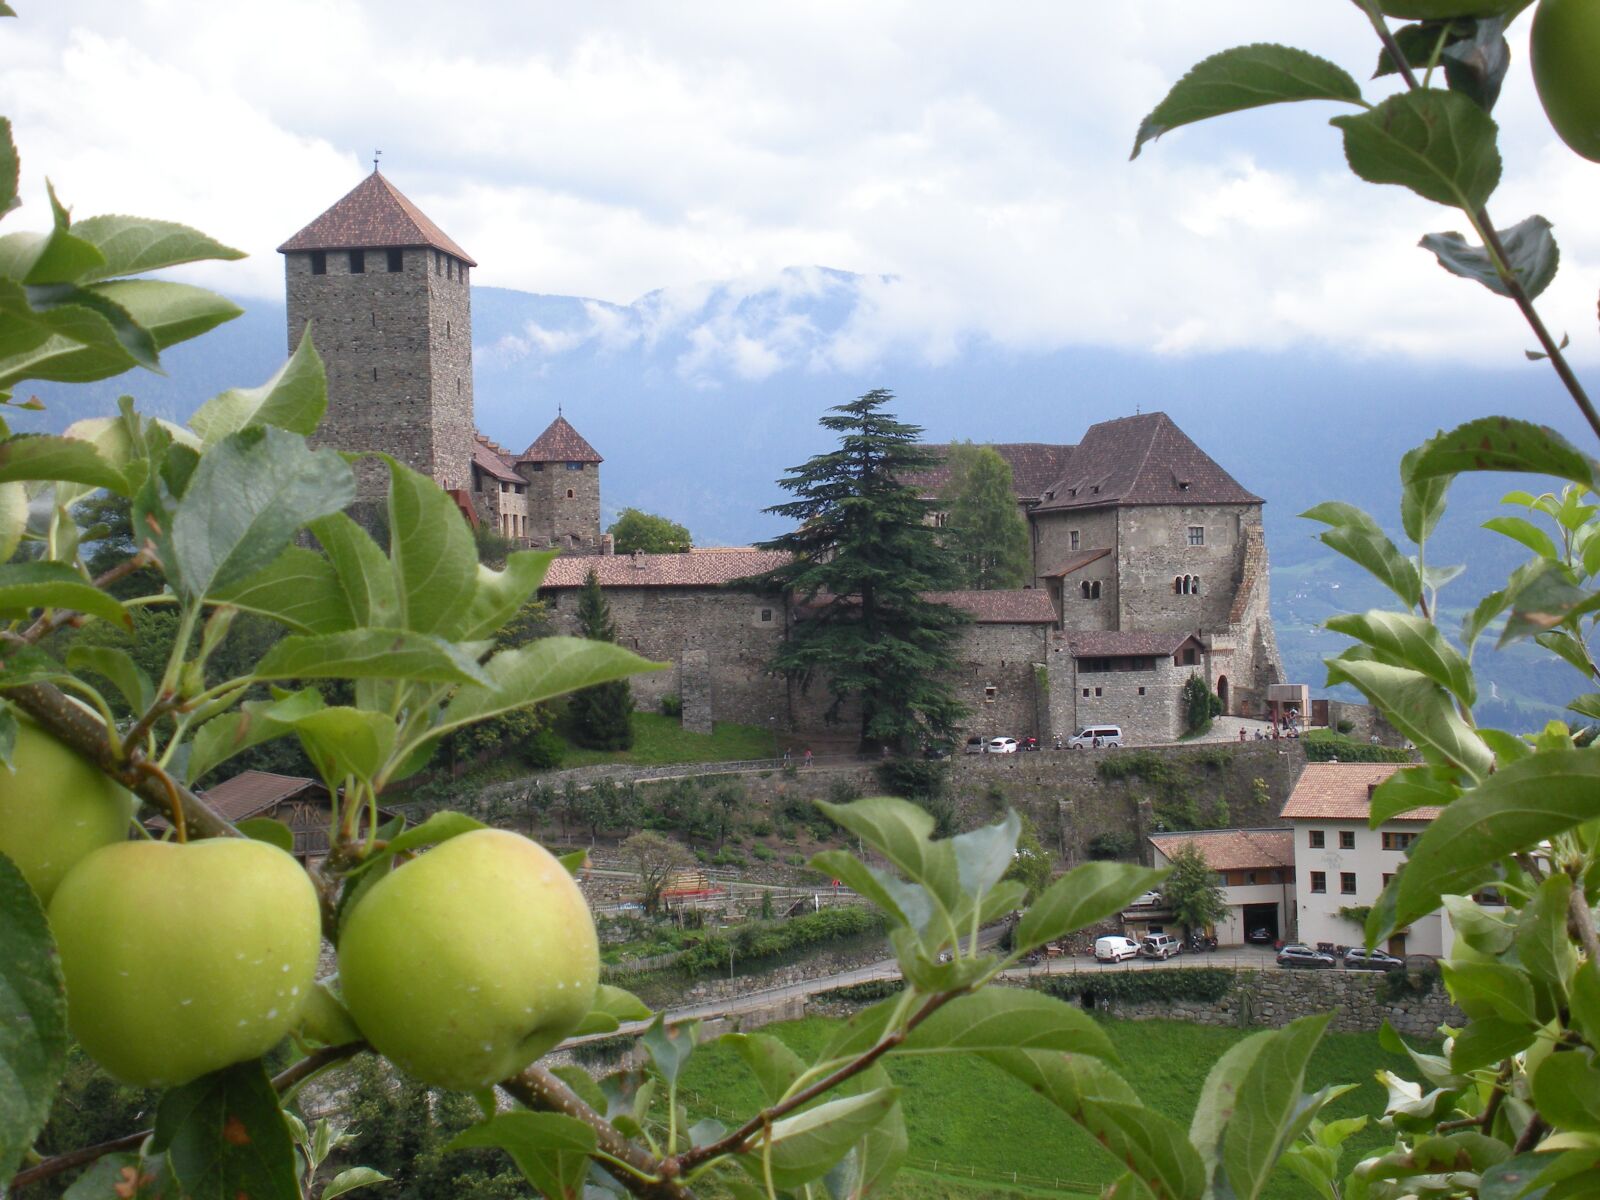 Nikon Coolpix S210 sample photo. Castle, apples, landscape photography